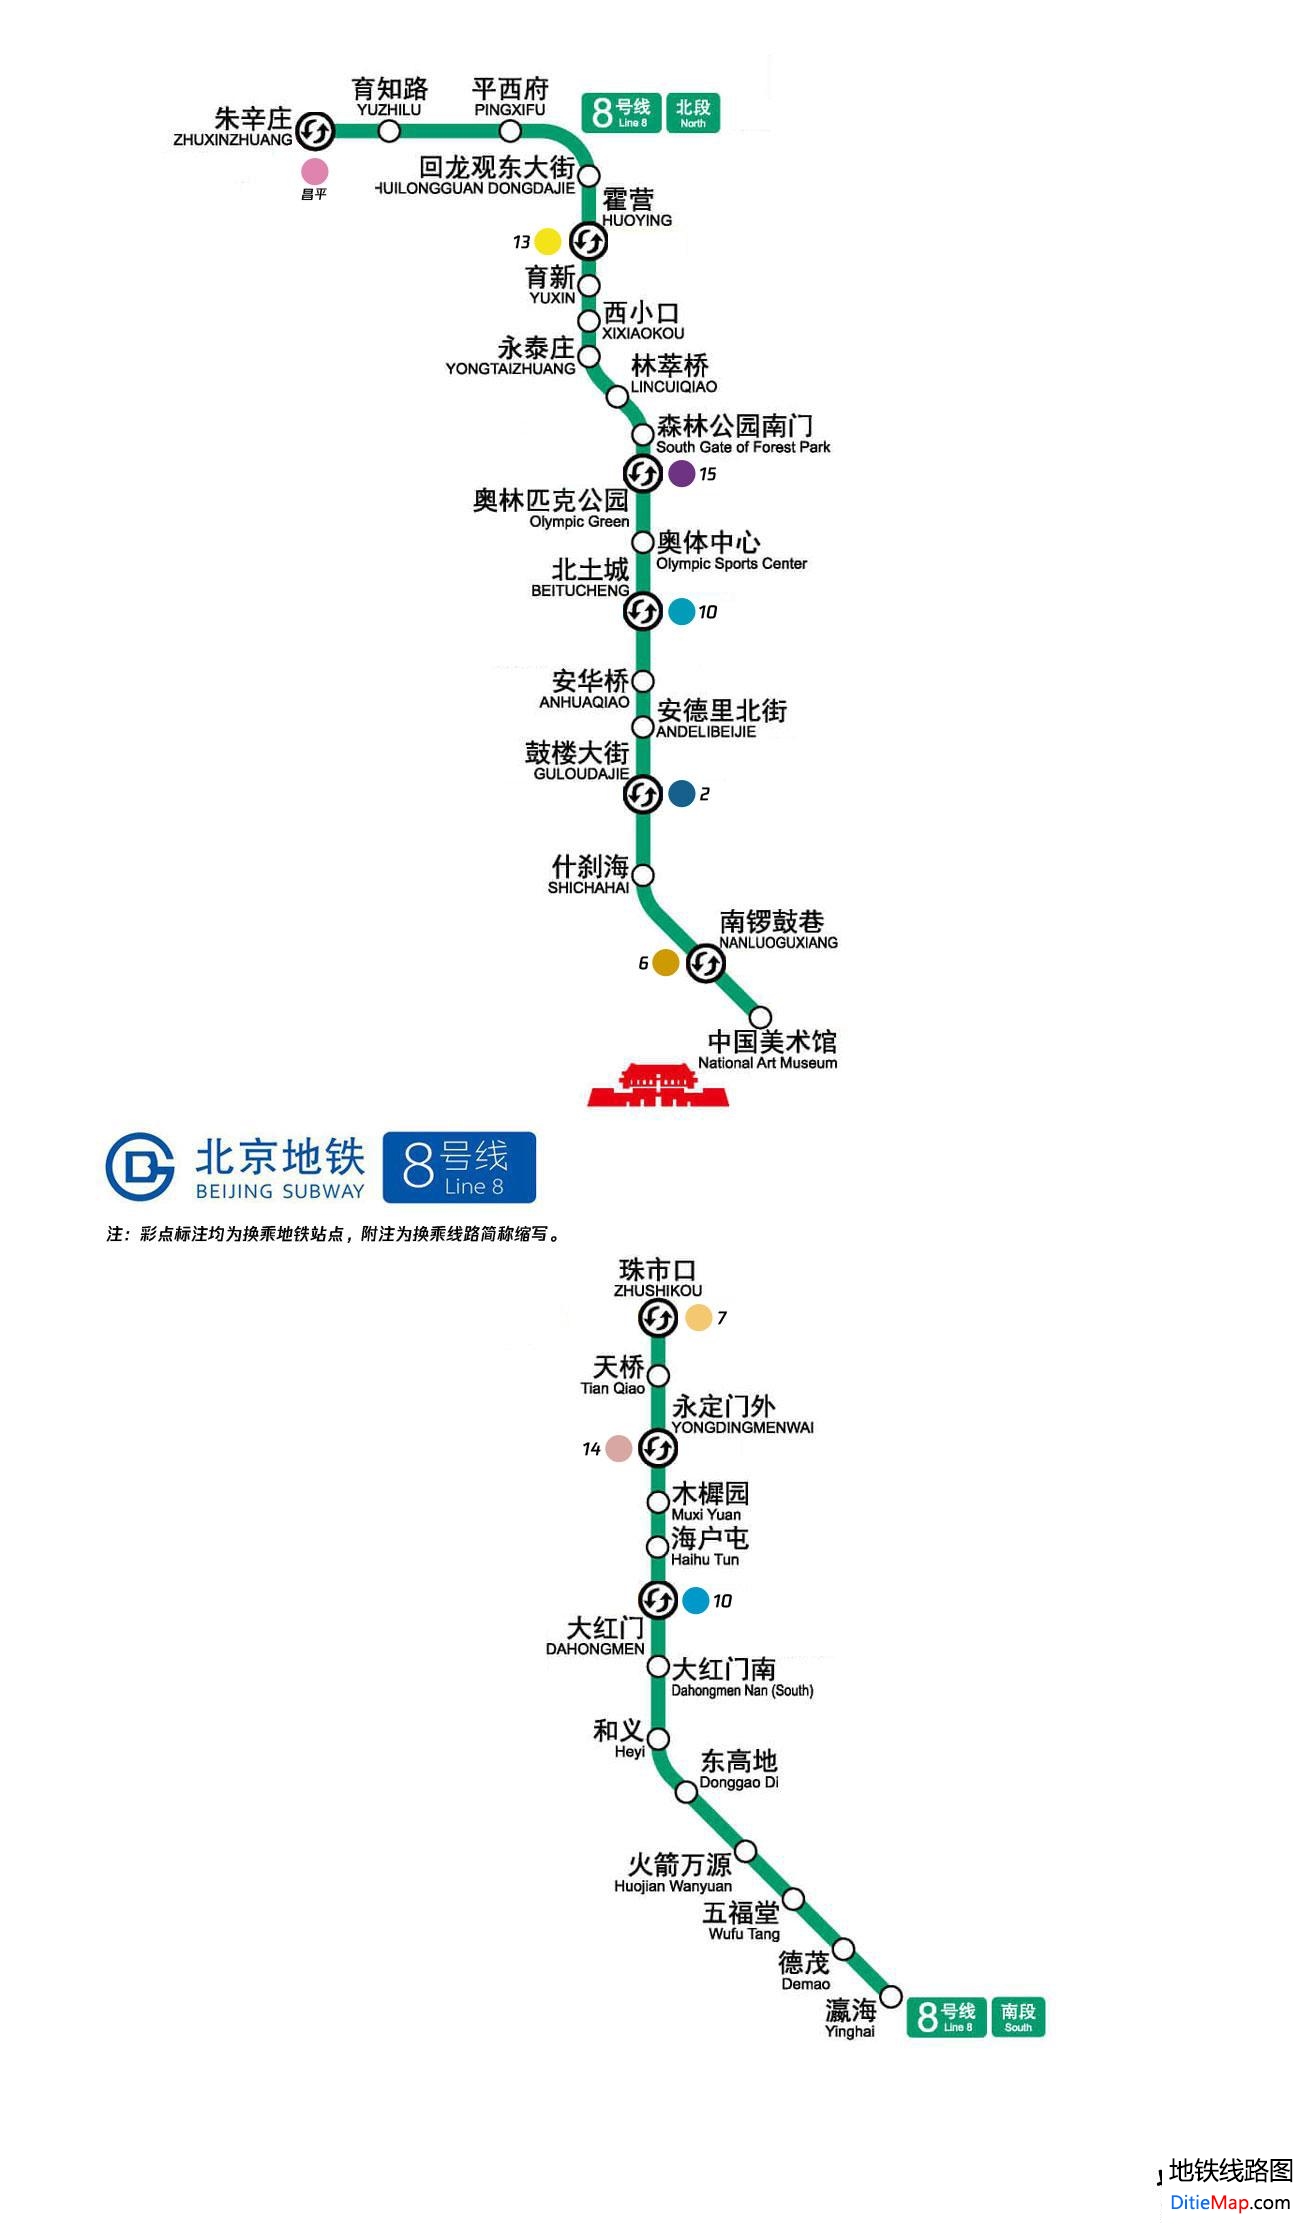 北京地铁8号线线路图 北京地铁八号线 北京地铁8号线 北京地铁线路图